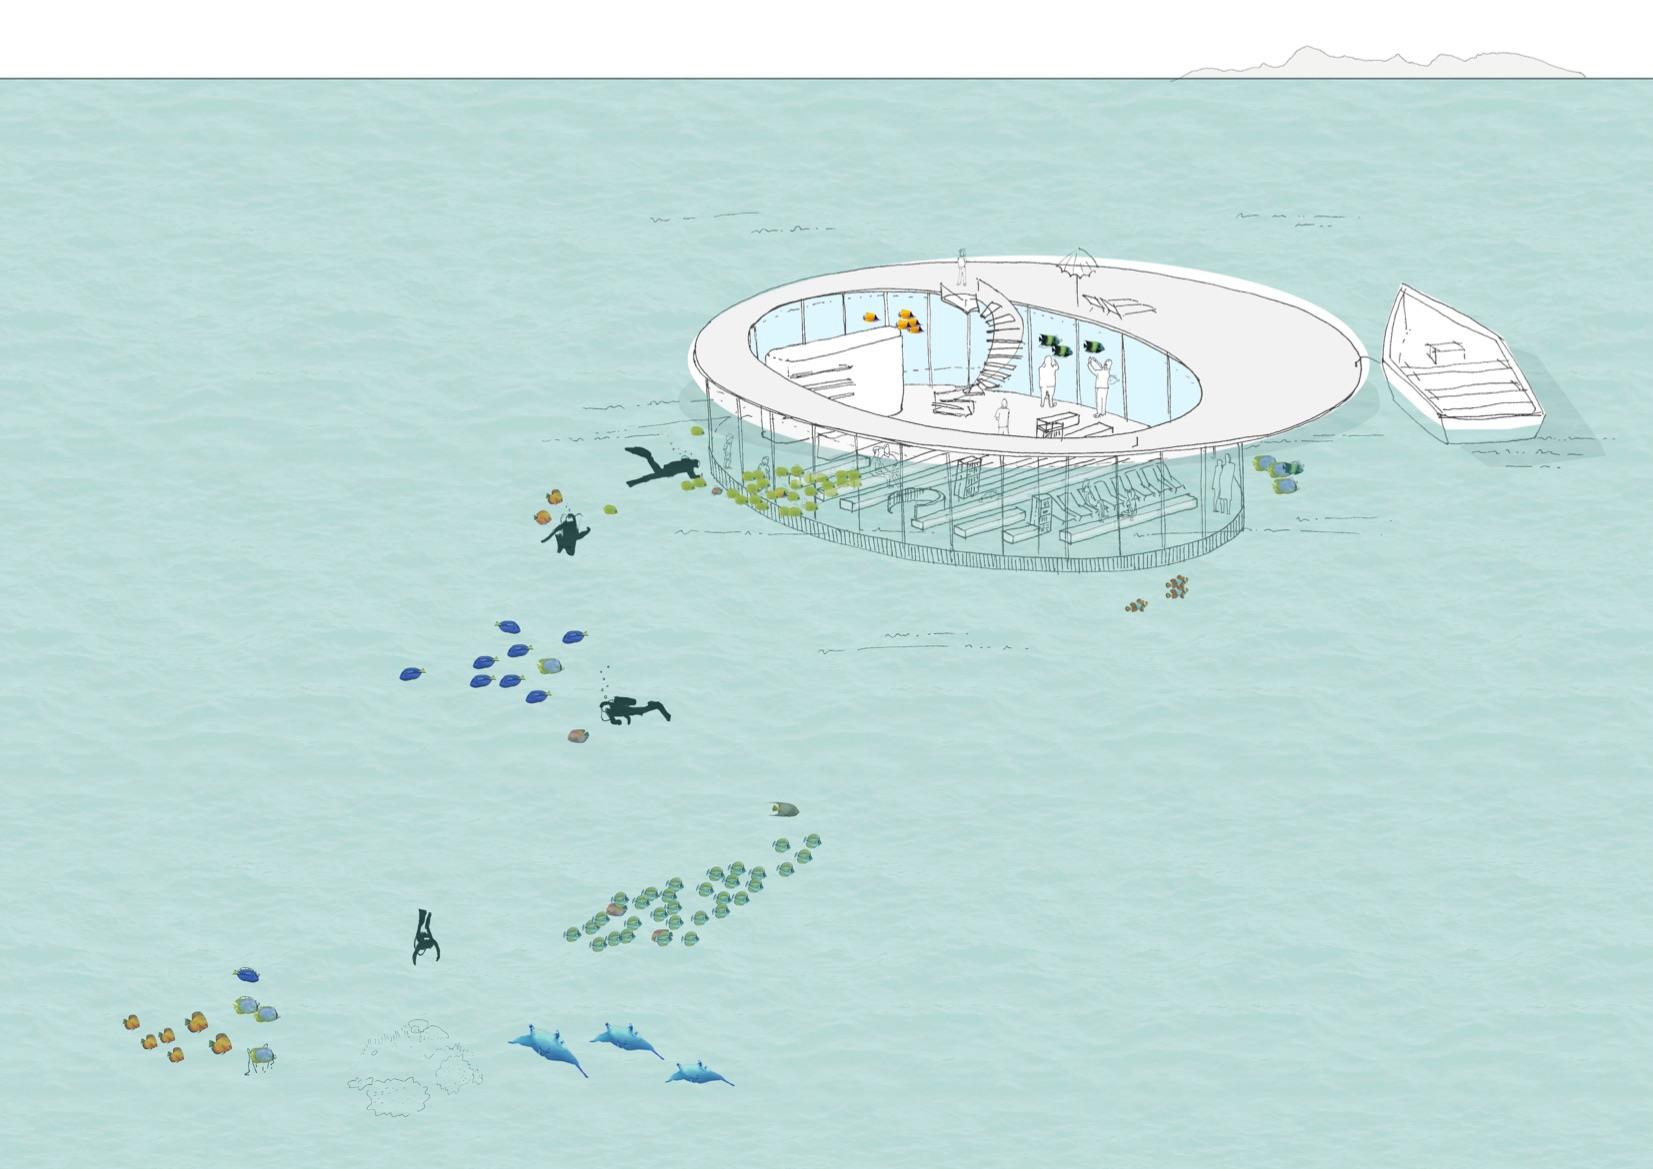 Le salon sous-marin de Tetra : cette structure flottante est équipée de ballasts pour s'immerger une fois tractée à destination.